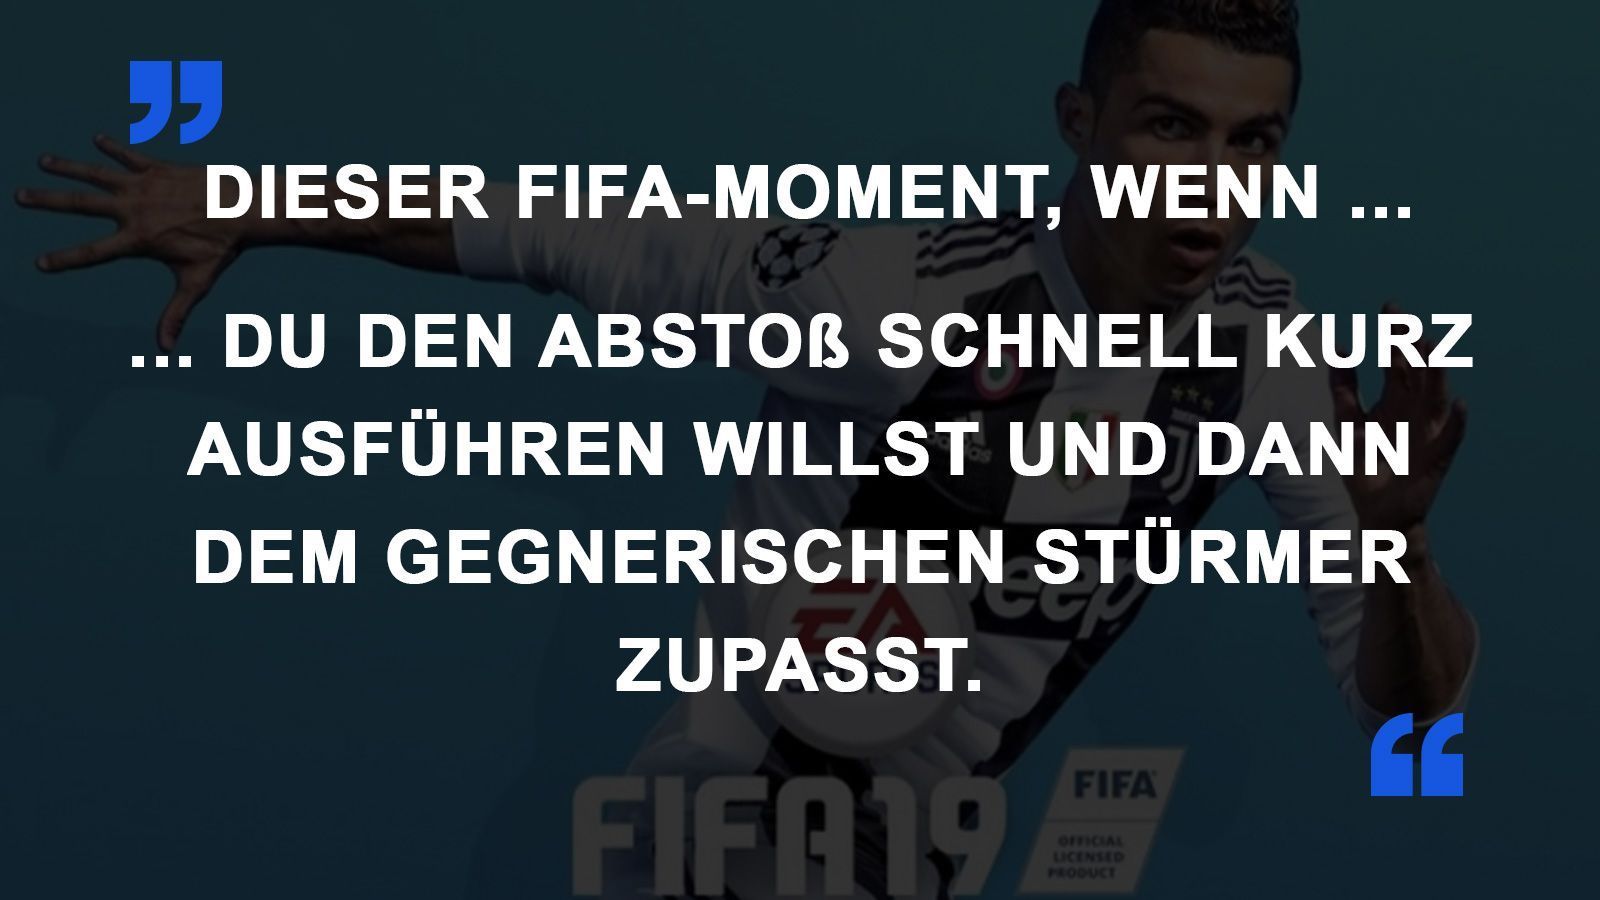 
                <strong>FIFA Momente Pass zum Gegner</strong><br>
                
              